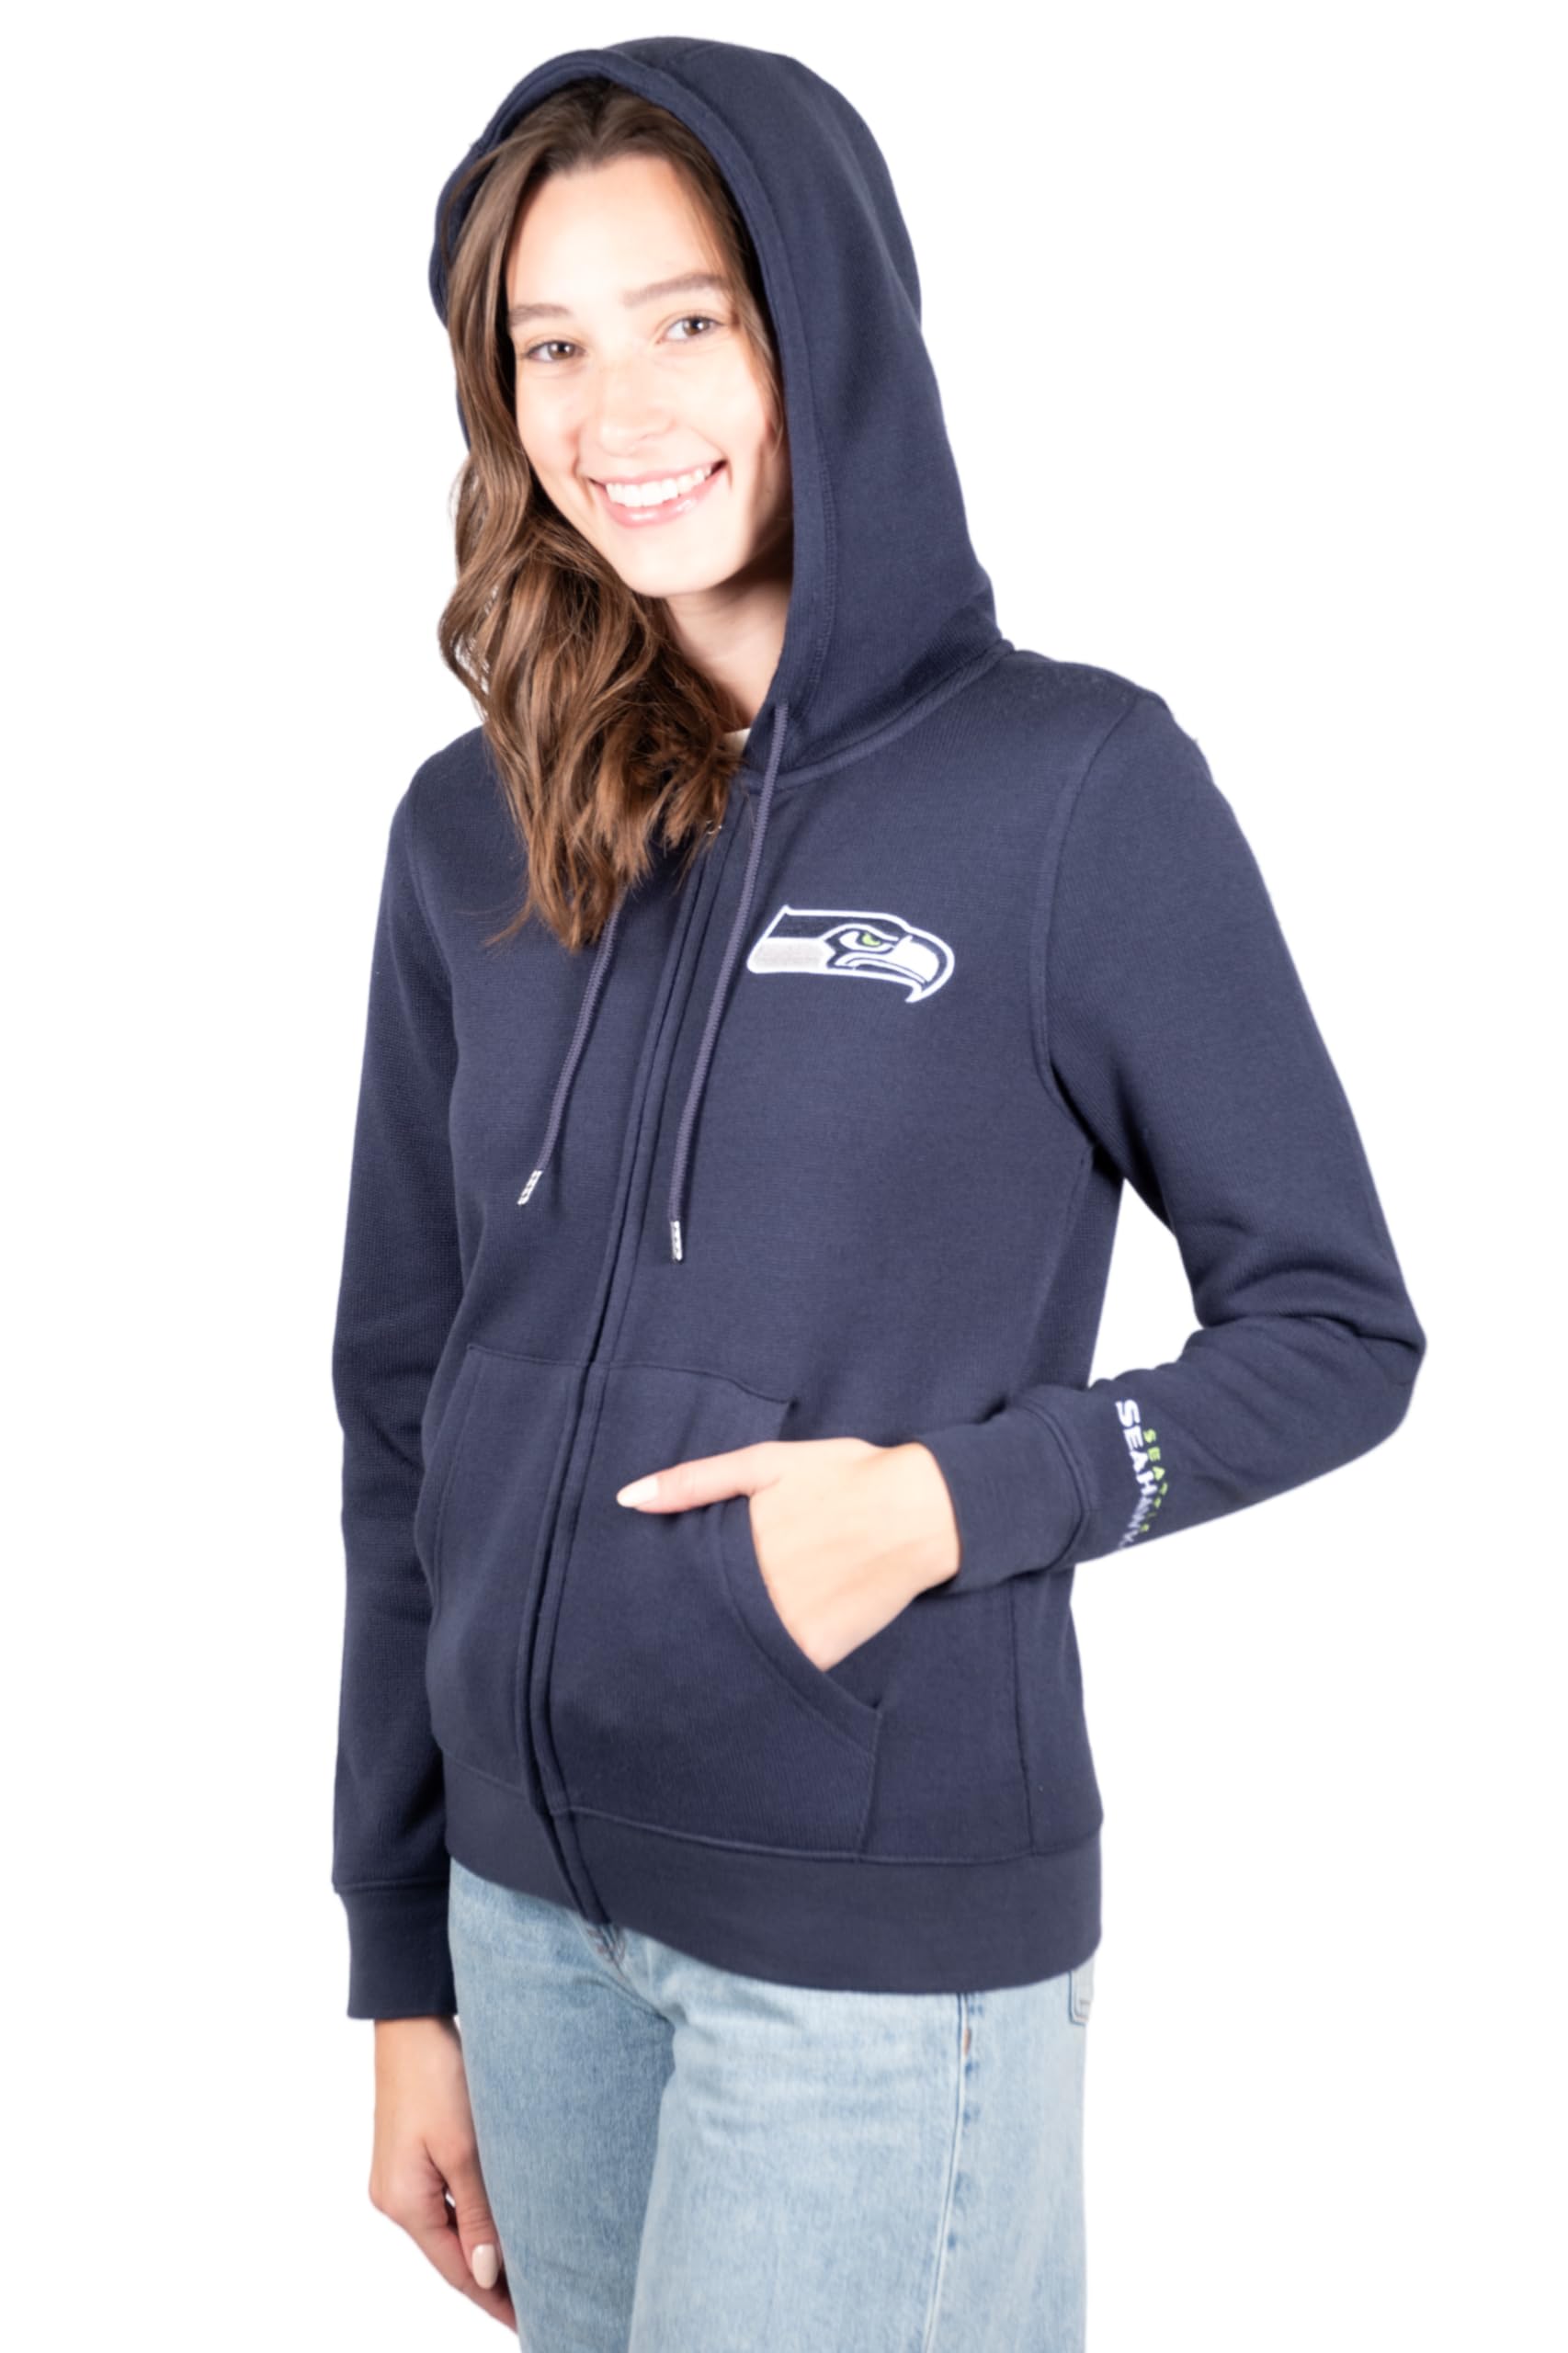 Ultra Game NFL Seattle Seahawks Womens Full Zip Soft Marl Knit Hoodie Sweatshirt Jacket|Seattle Seahawks